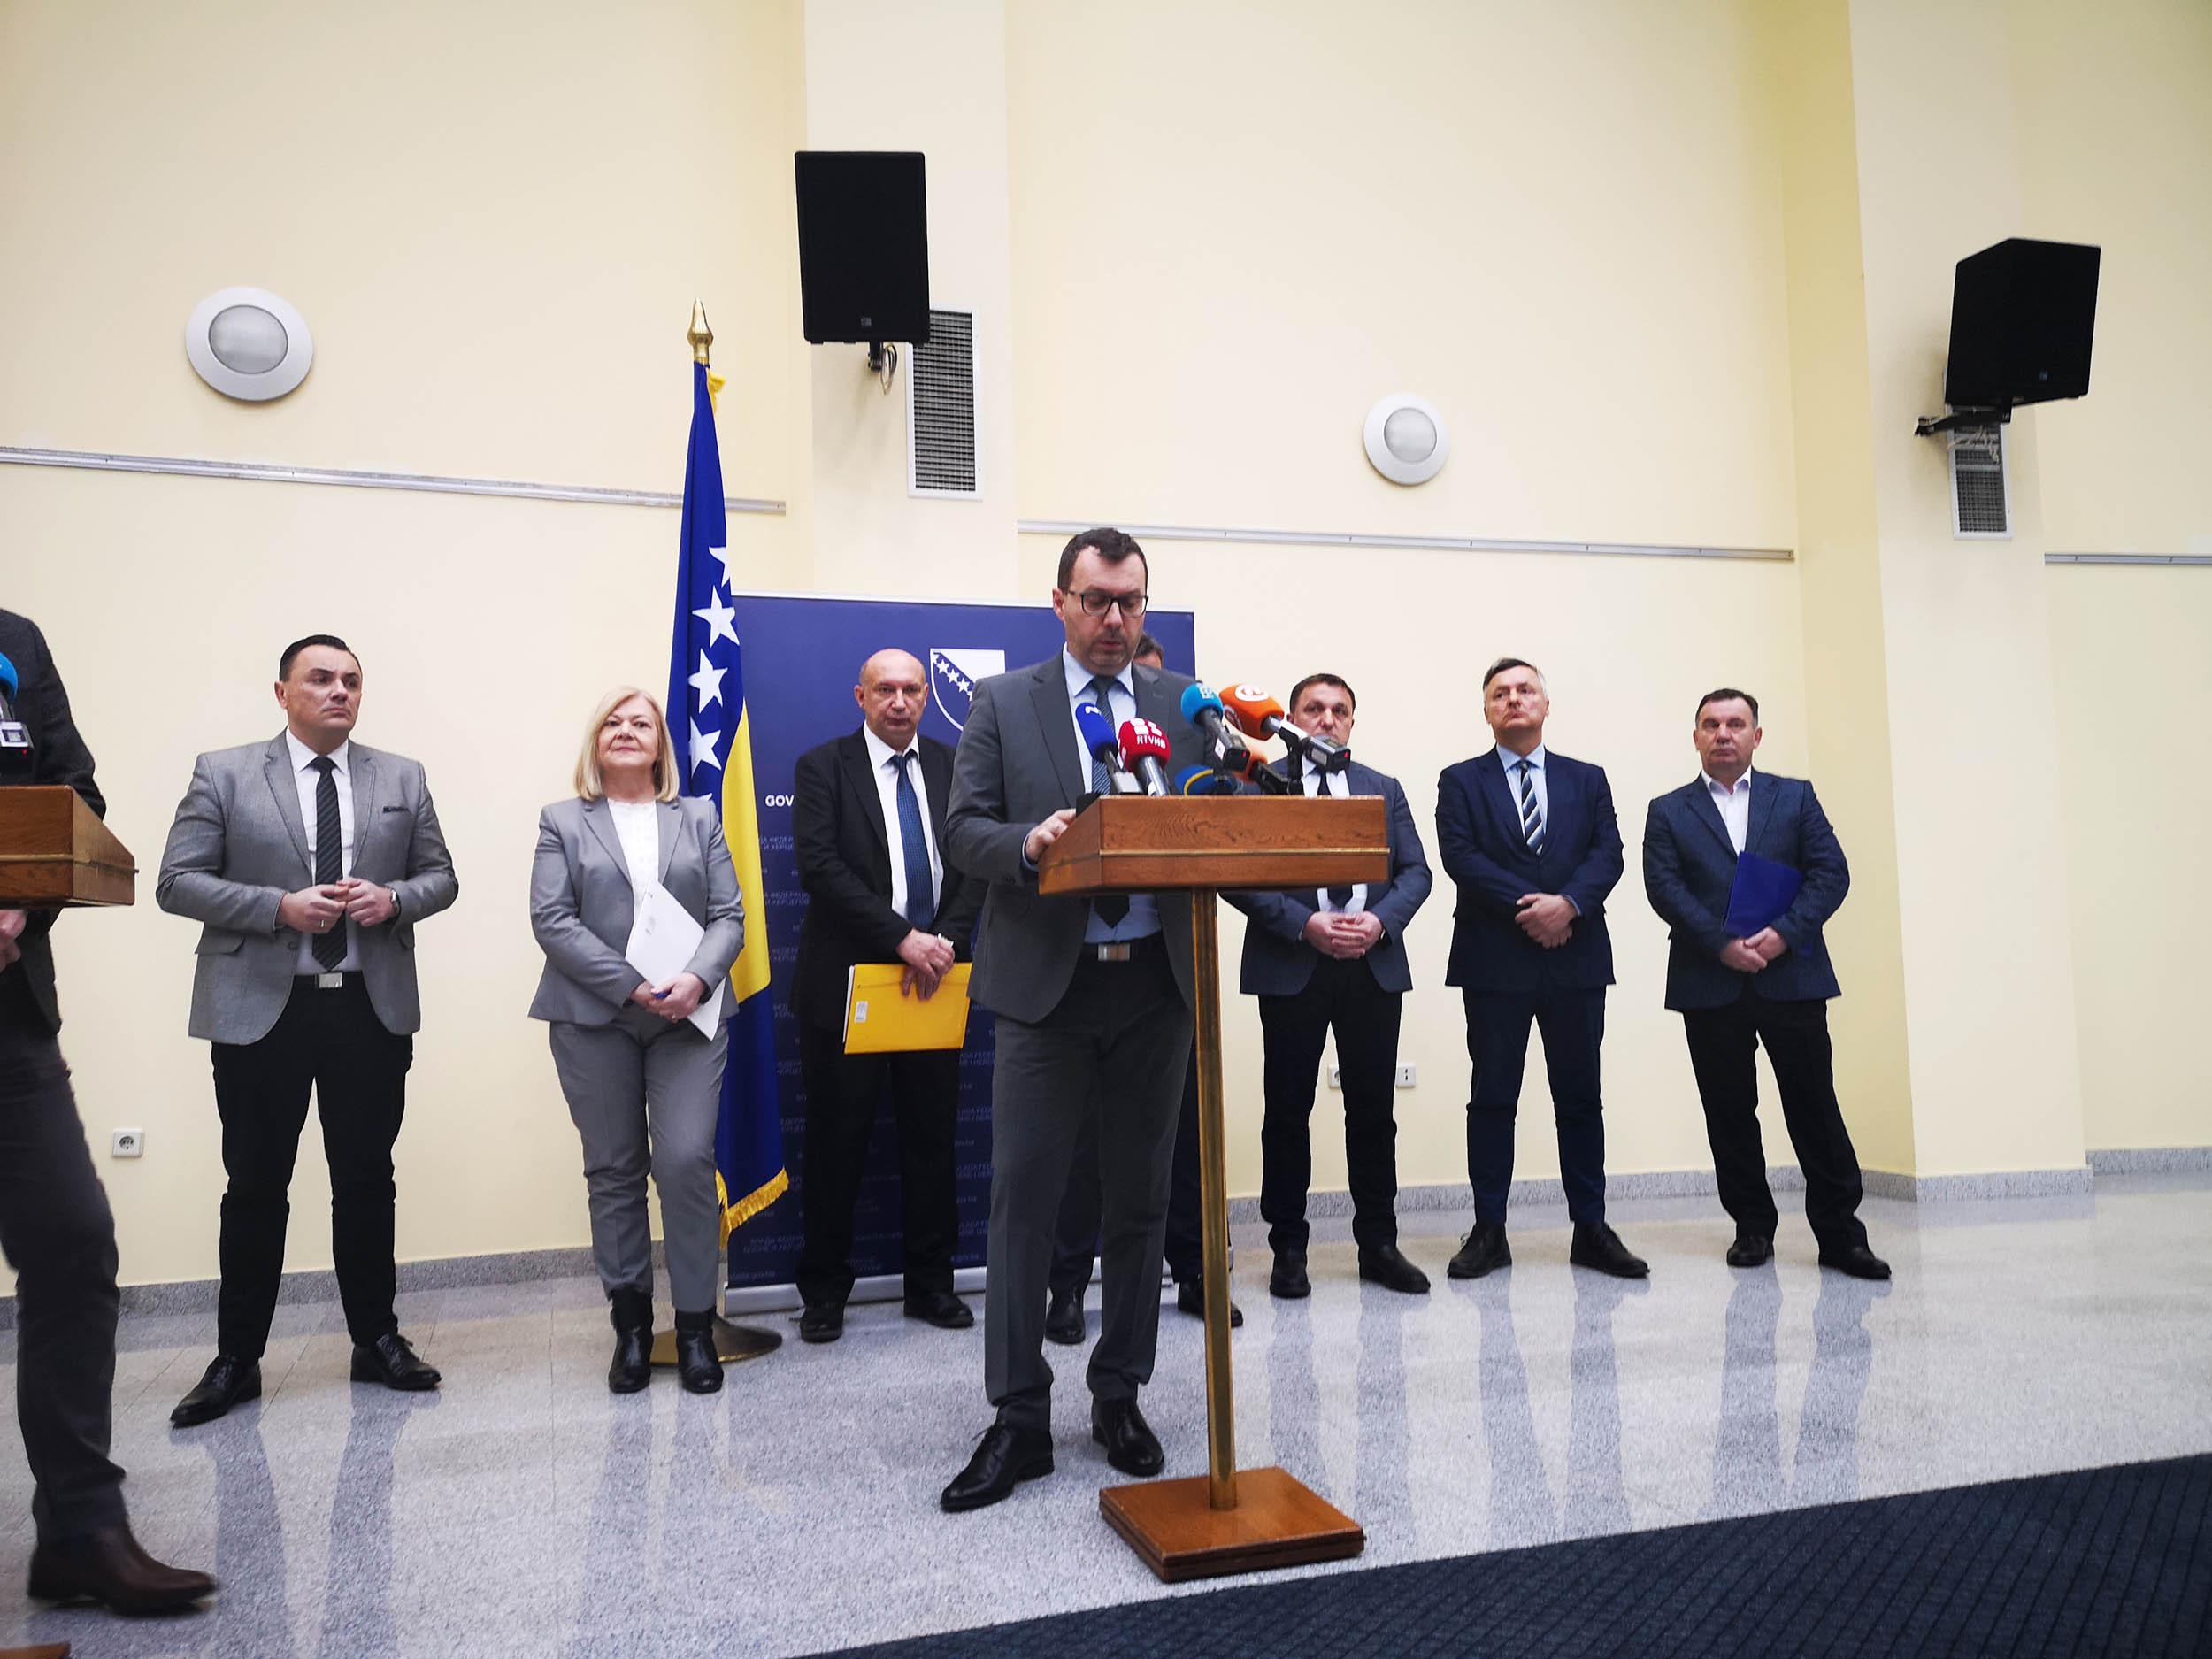 Džindić: "Elektroprivreda BiH" mora naći alternativne dobavljače, jer ima termoblokove iz Rusije i Ukrajine